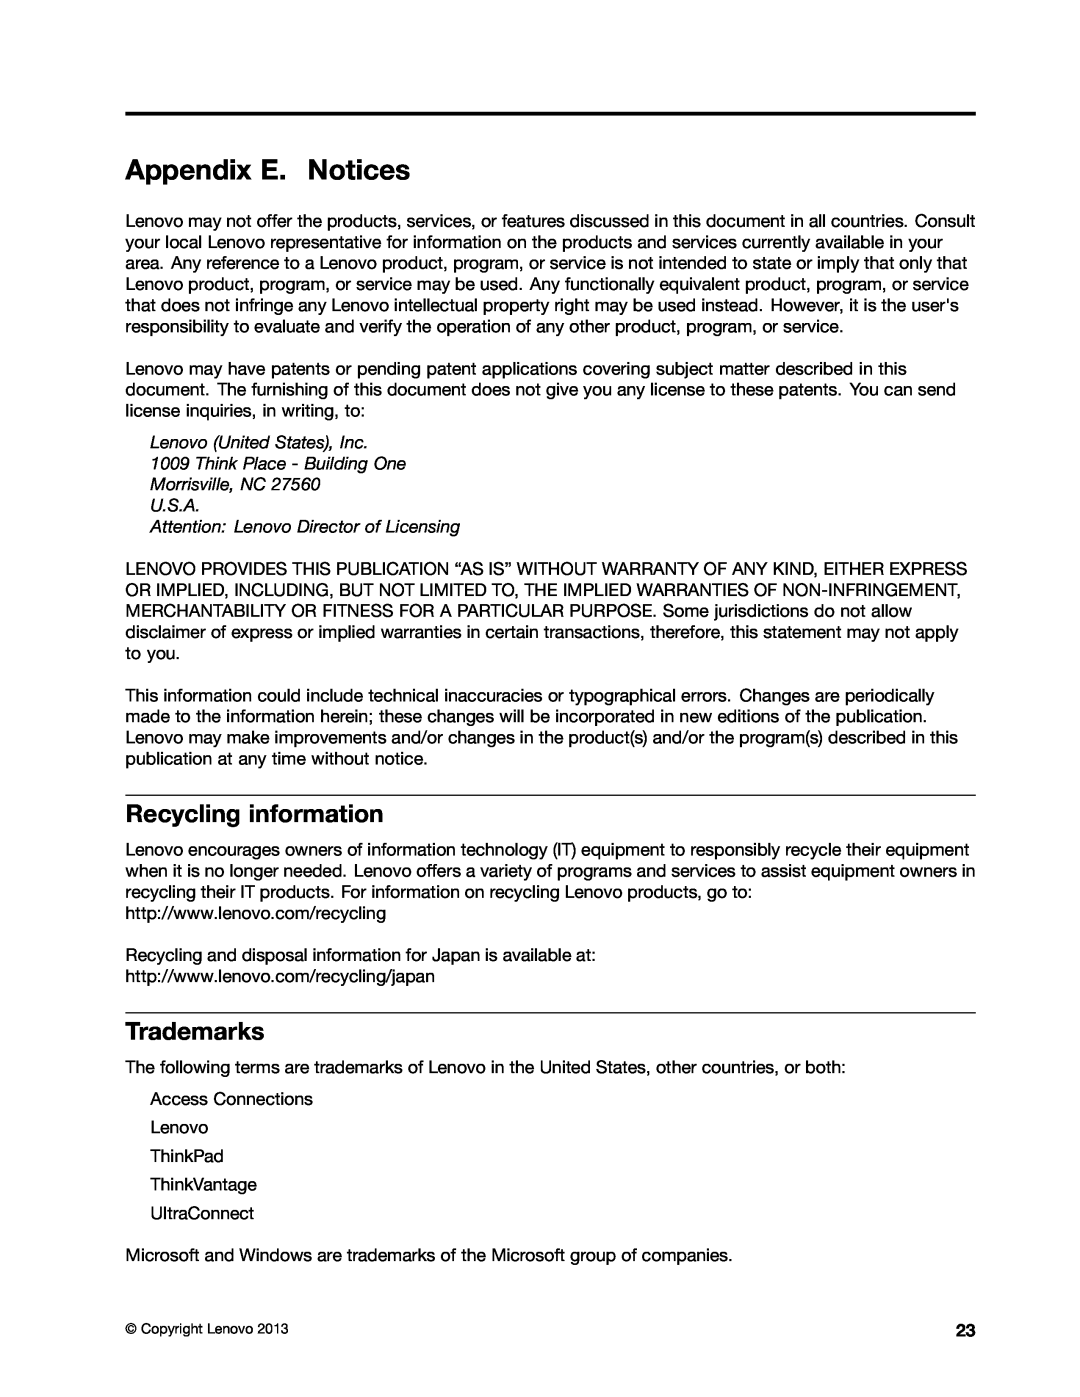 Lenovo GOBI 5000 manual Appendix E. Notices, Recycling information, Trademarks 